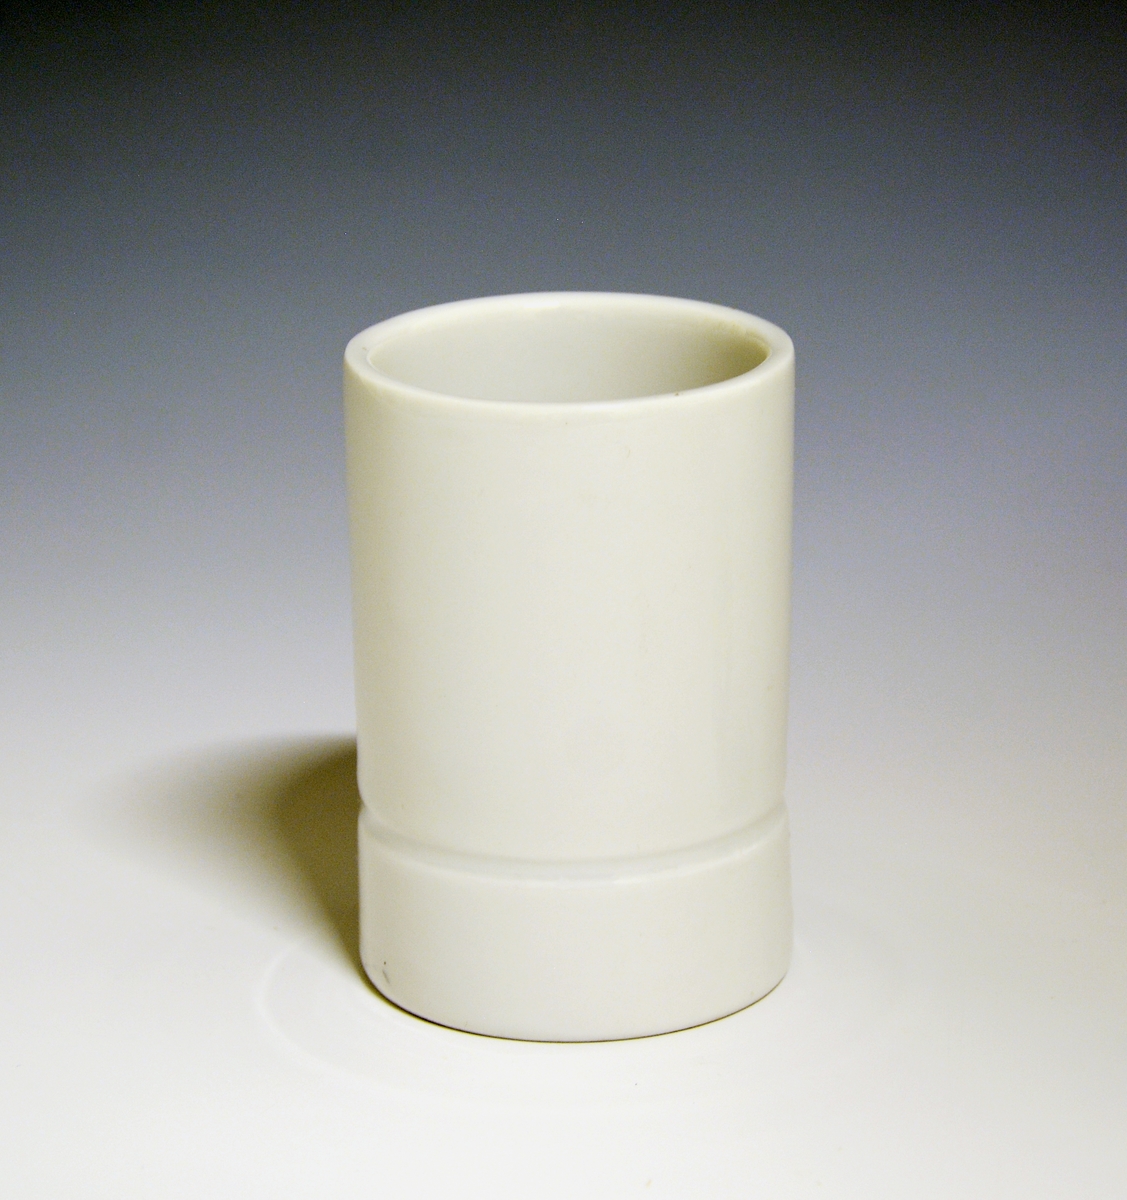 Vase og telysholder av porselen. Fungerer som lysestake den ene veien og vase den andre veien. Sylinderformet med en inntrapping i overgangen mellom vase og telysholder. Hvit glasur. 
Design: Grete Rønning.